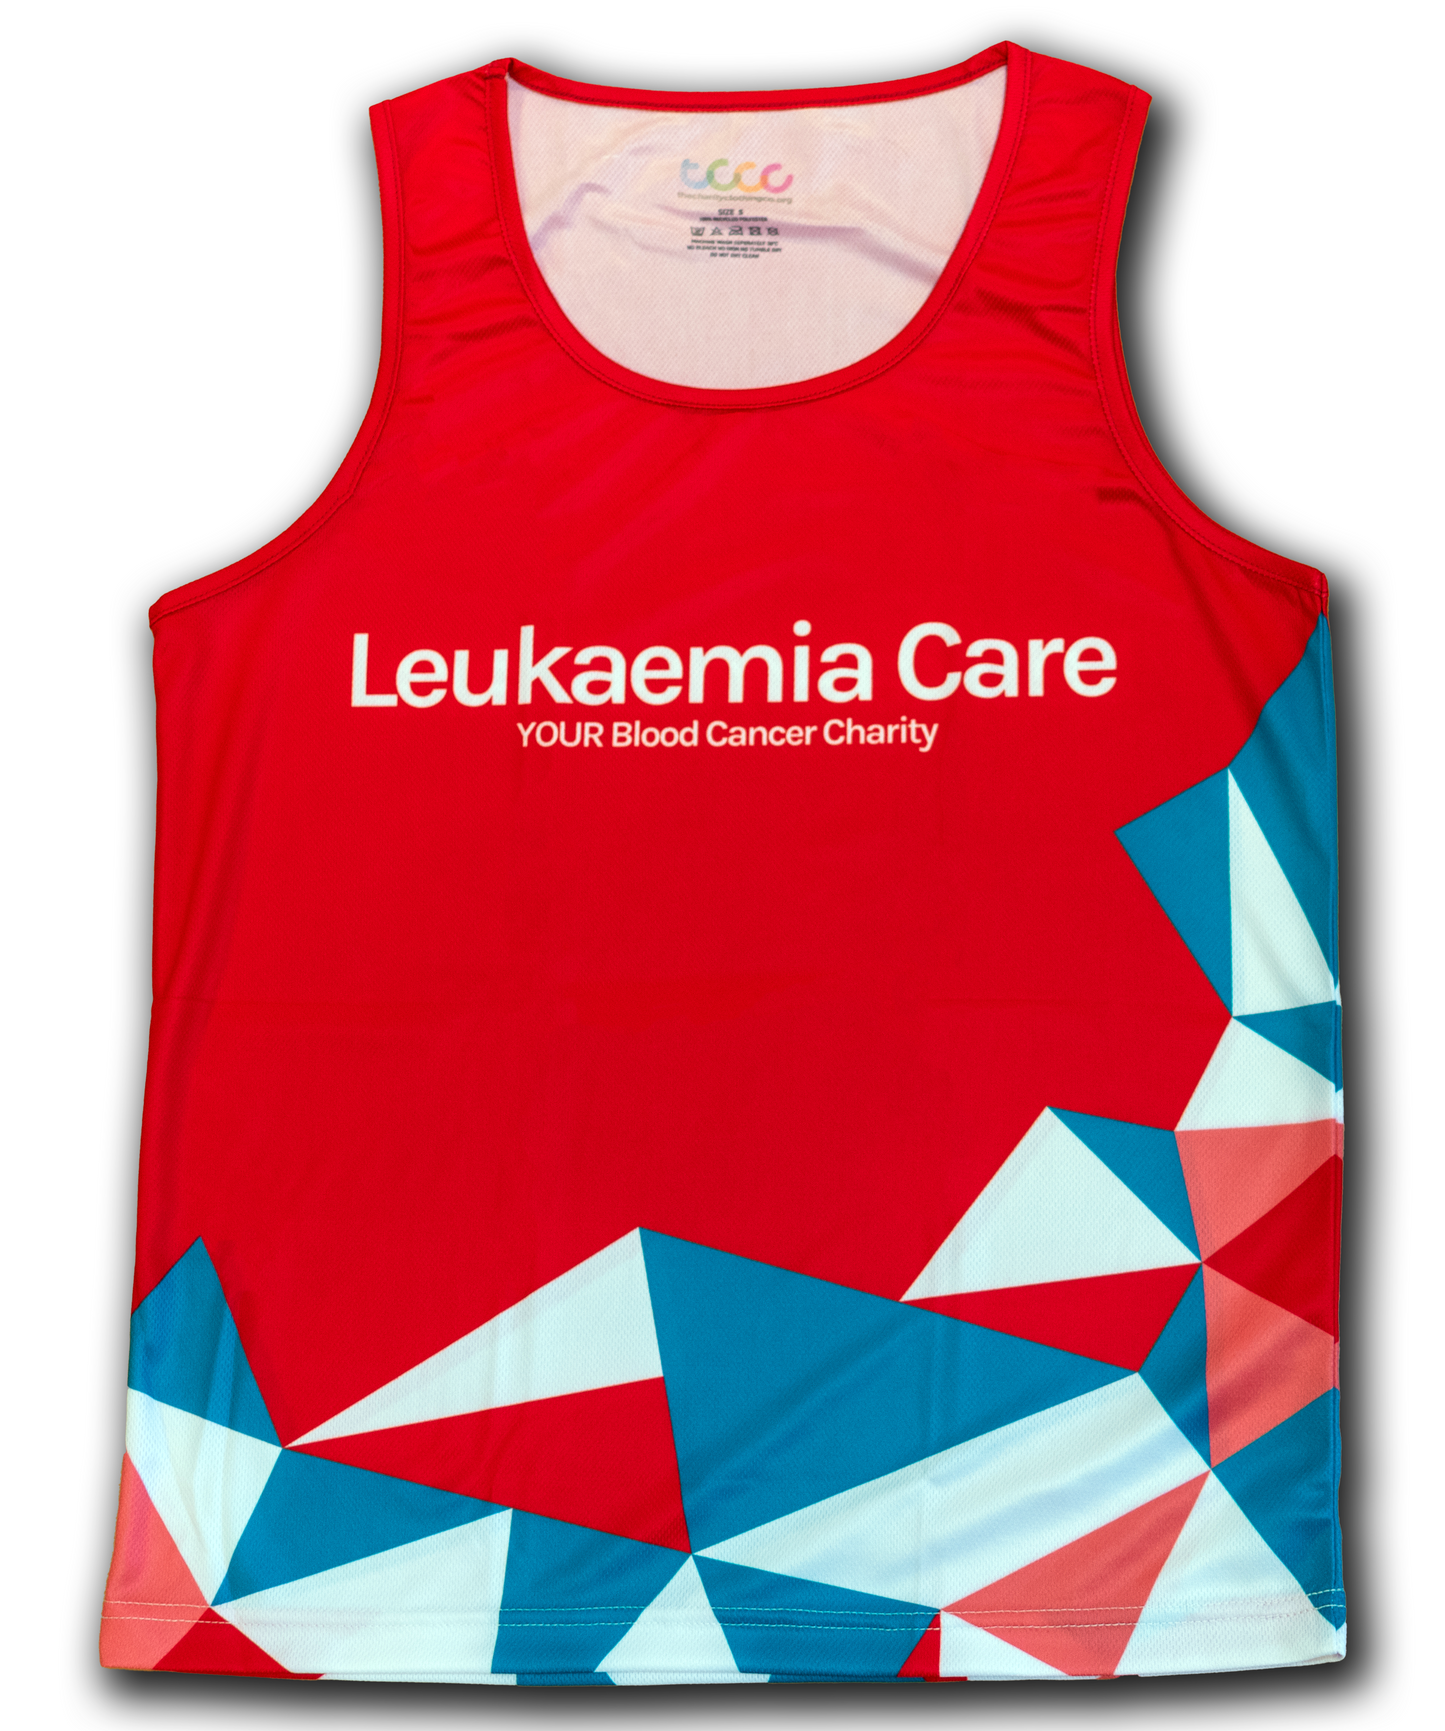 New Leukaemia Care Running Vest - Red design